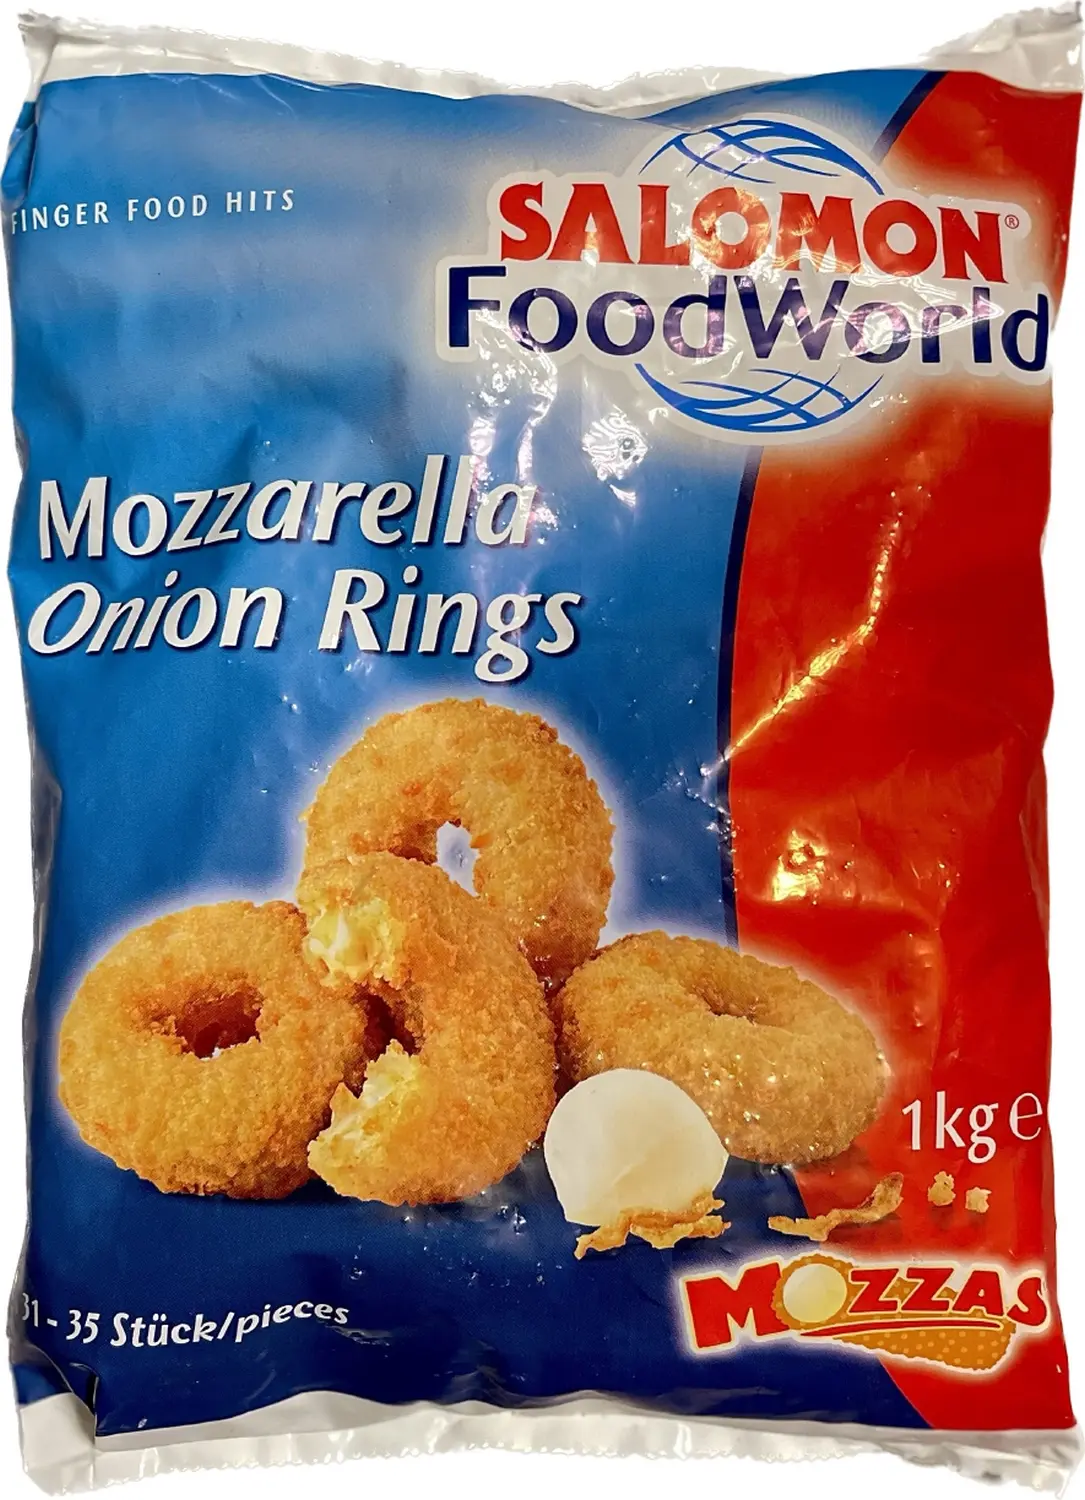 IKL-FOODS, Mozzarella Onion Rings, Salomon